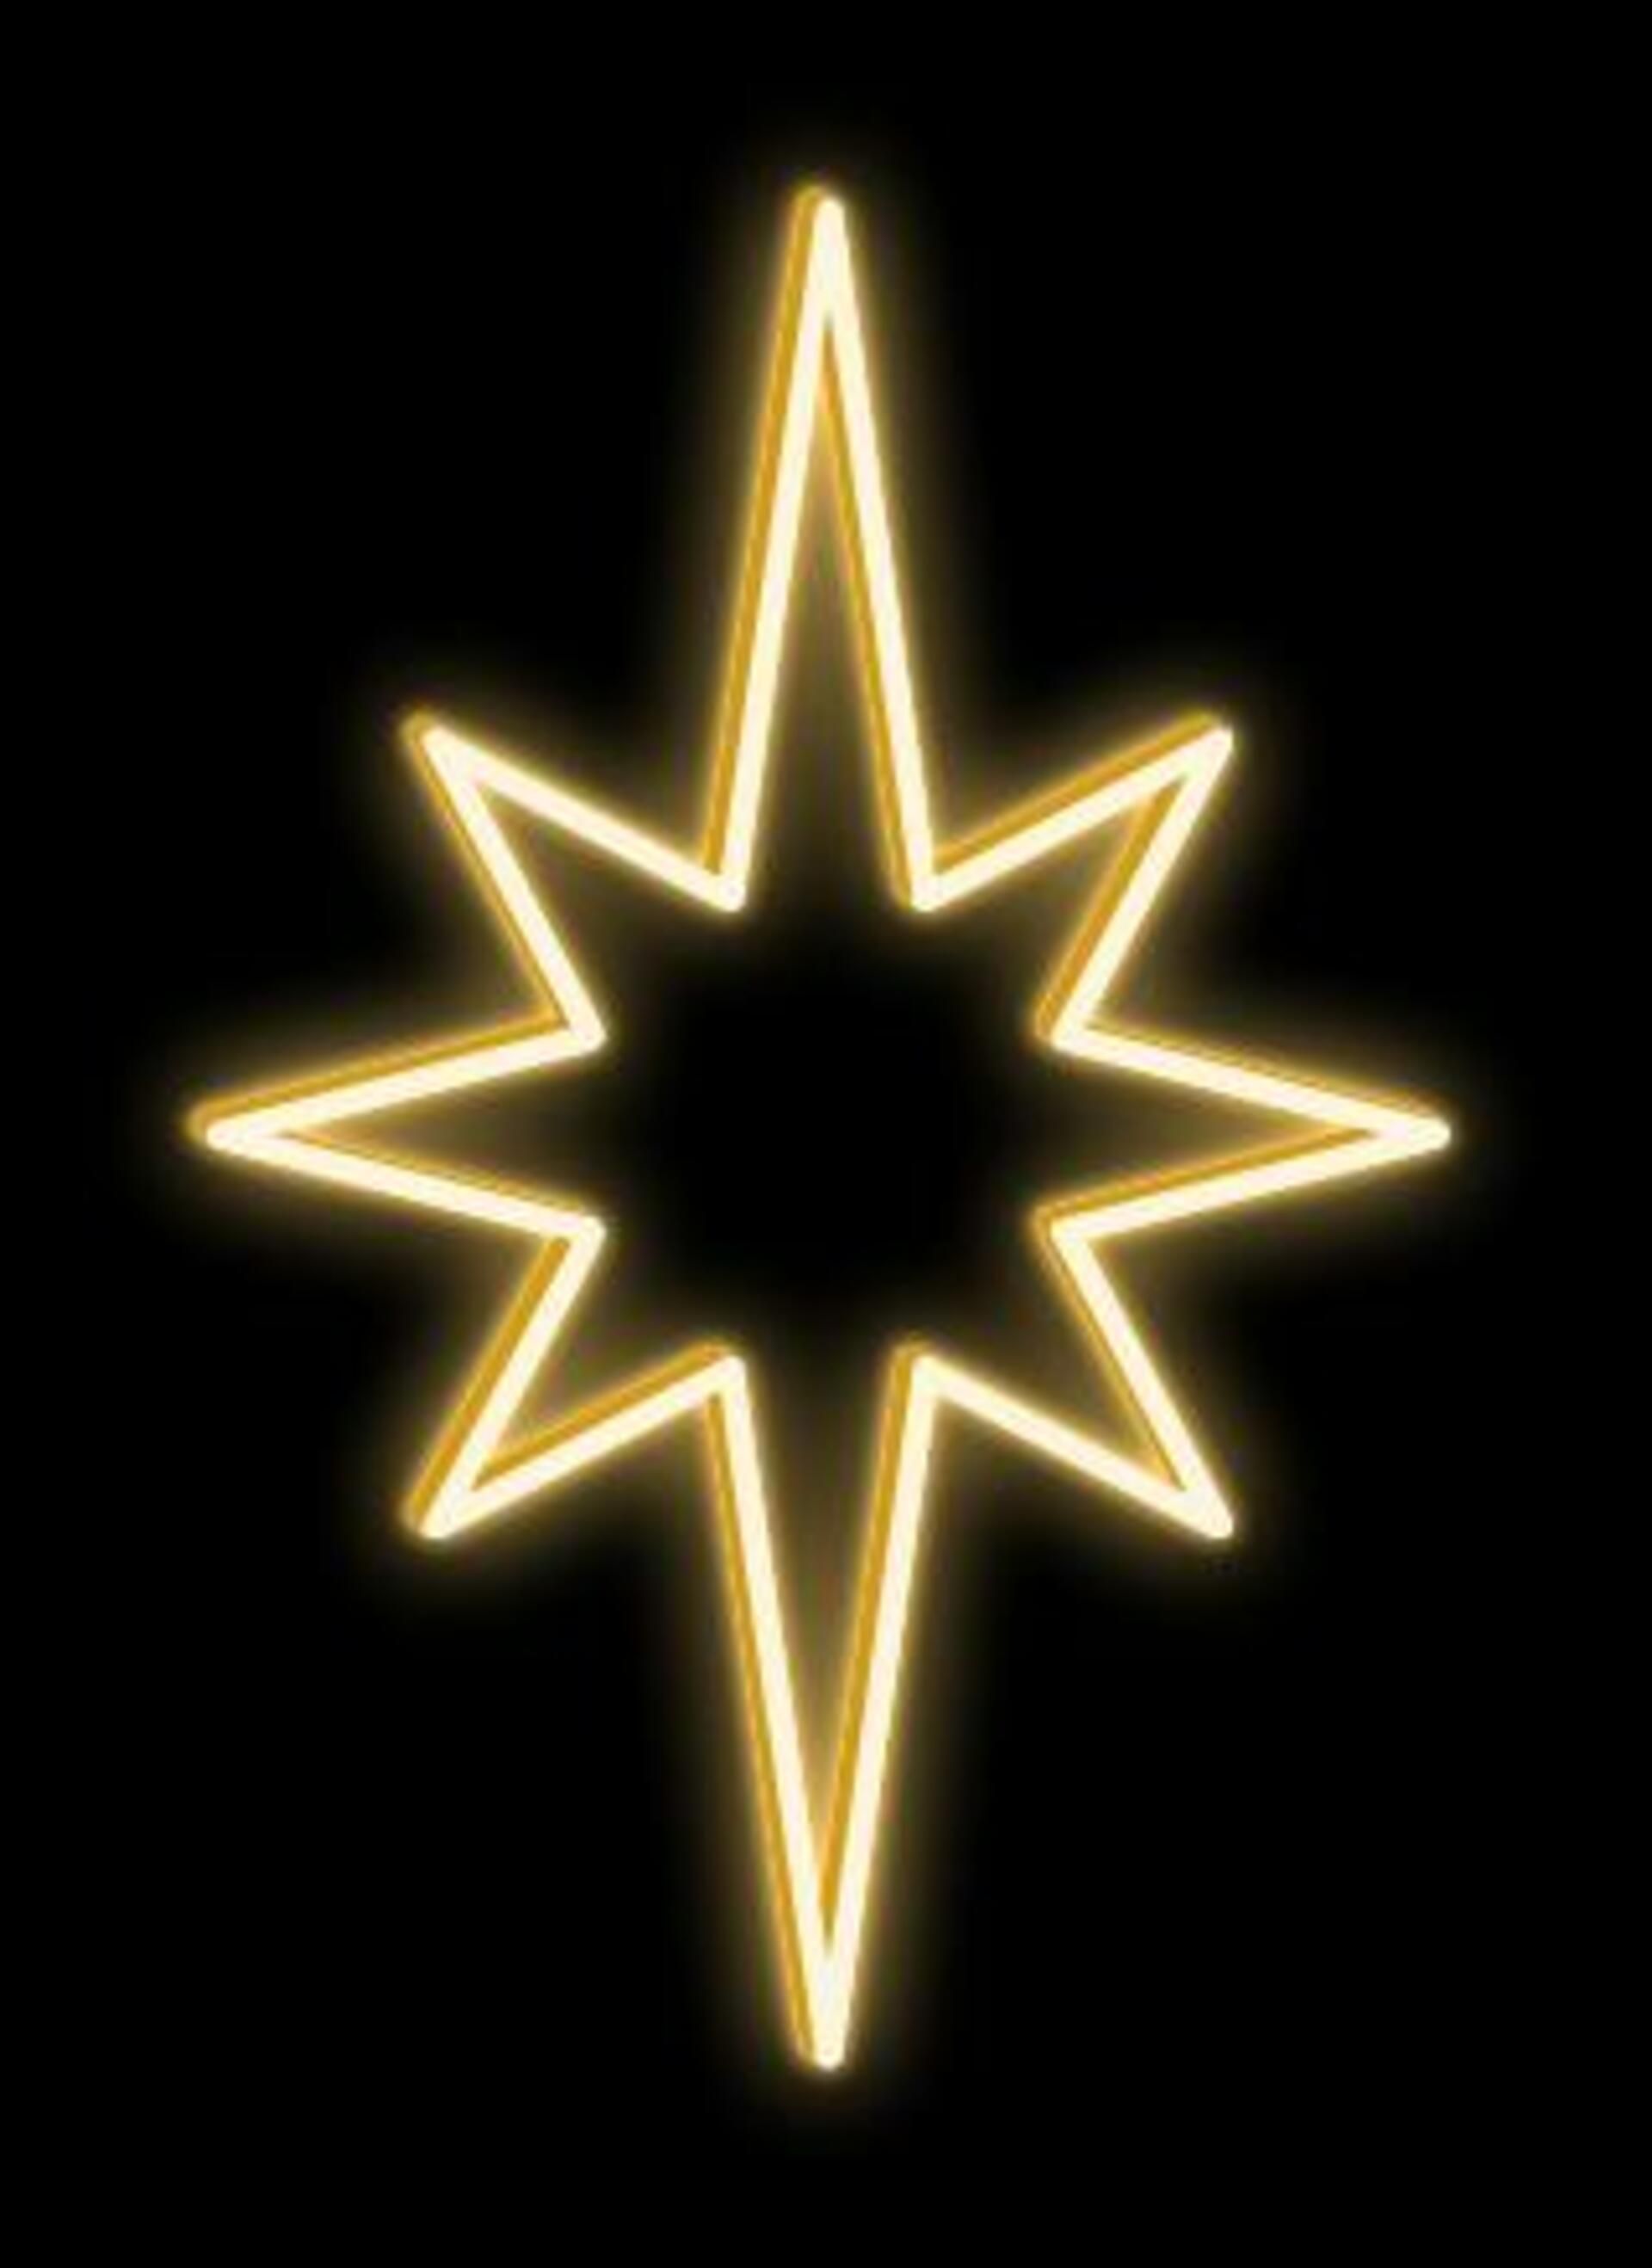 DecoLED LED světelná hvězda na VO, 45x70 cm, teple bílá